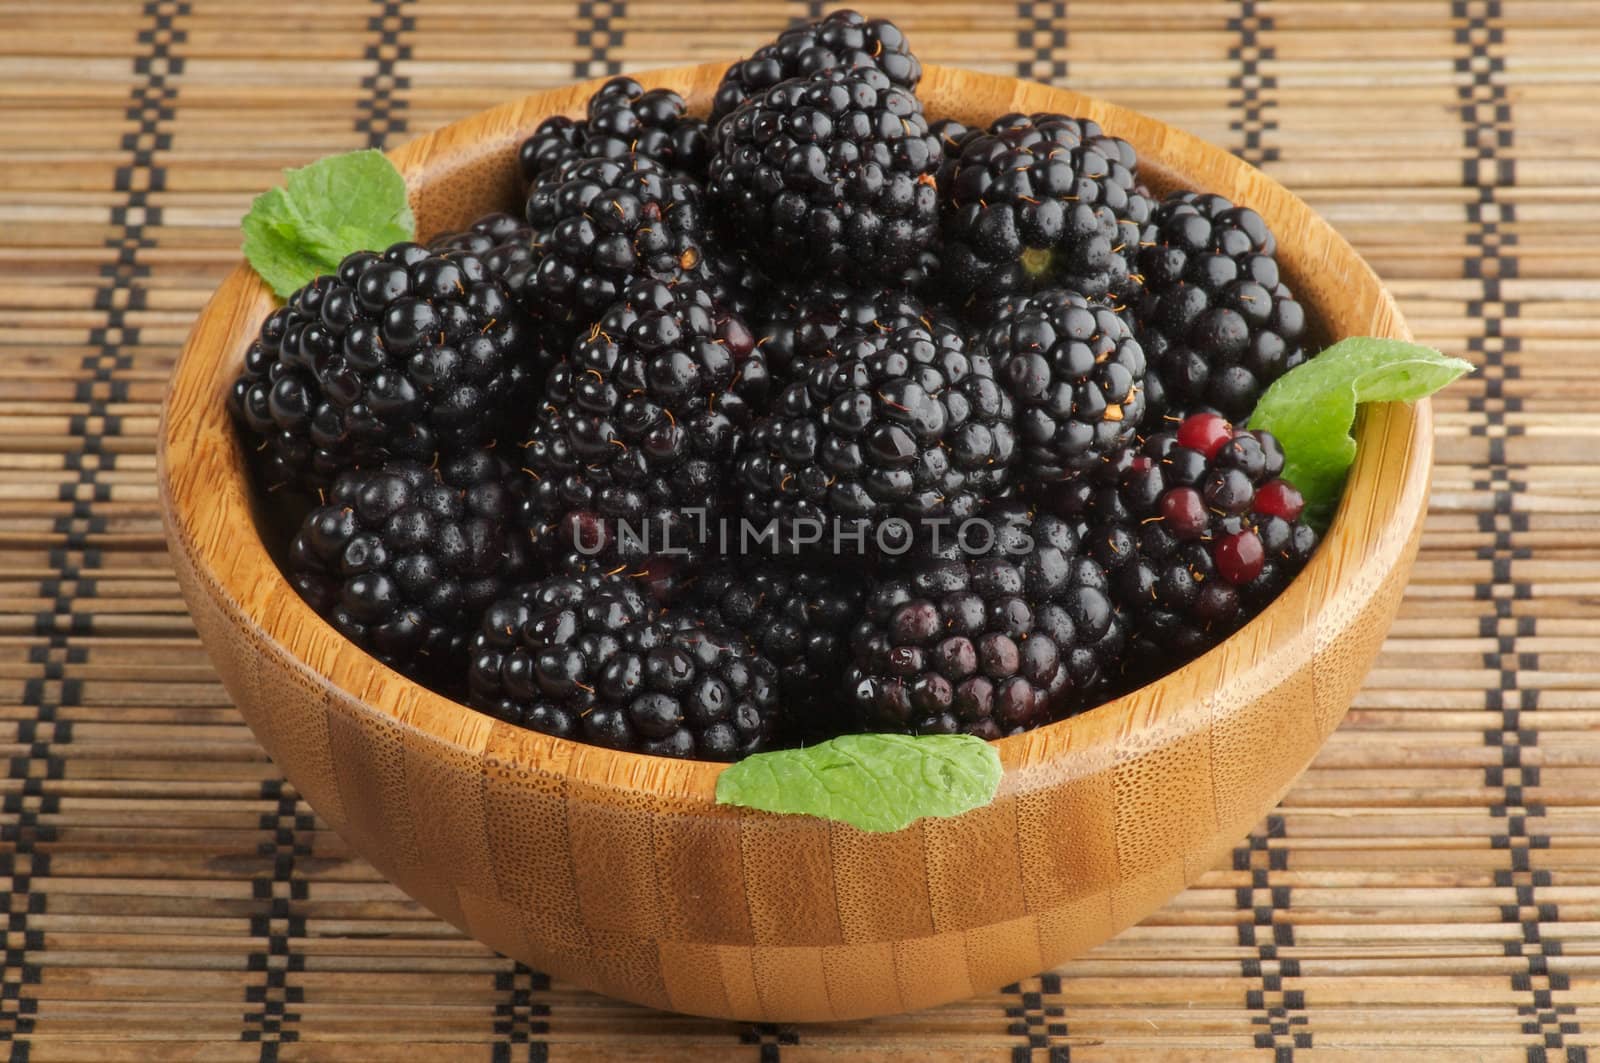 Blackberries in Wooden Bowl by zhekos